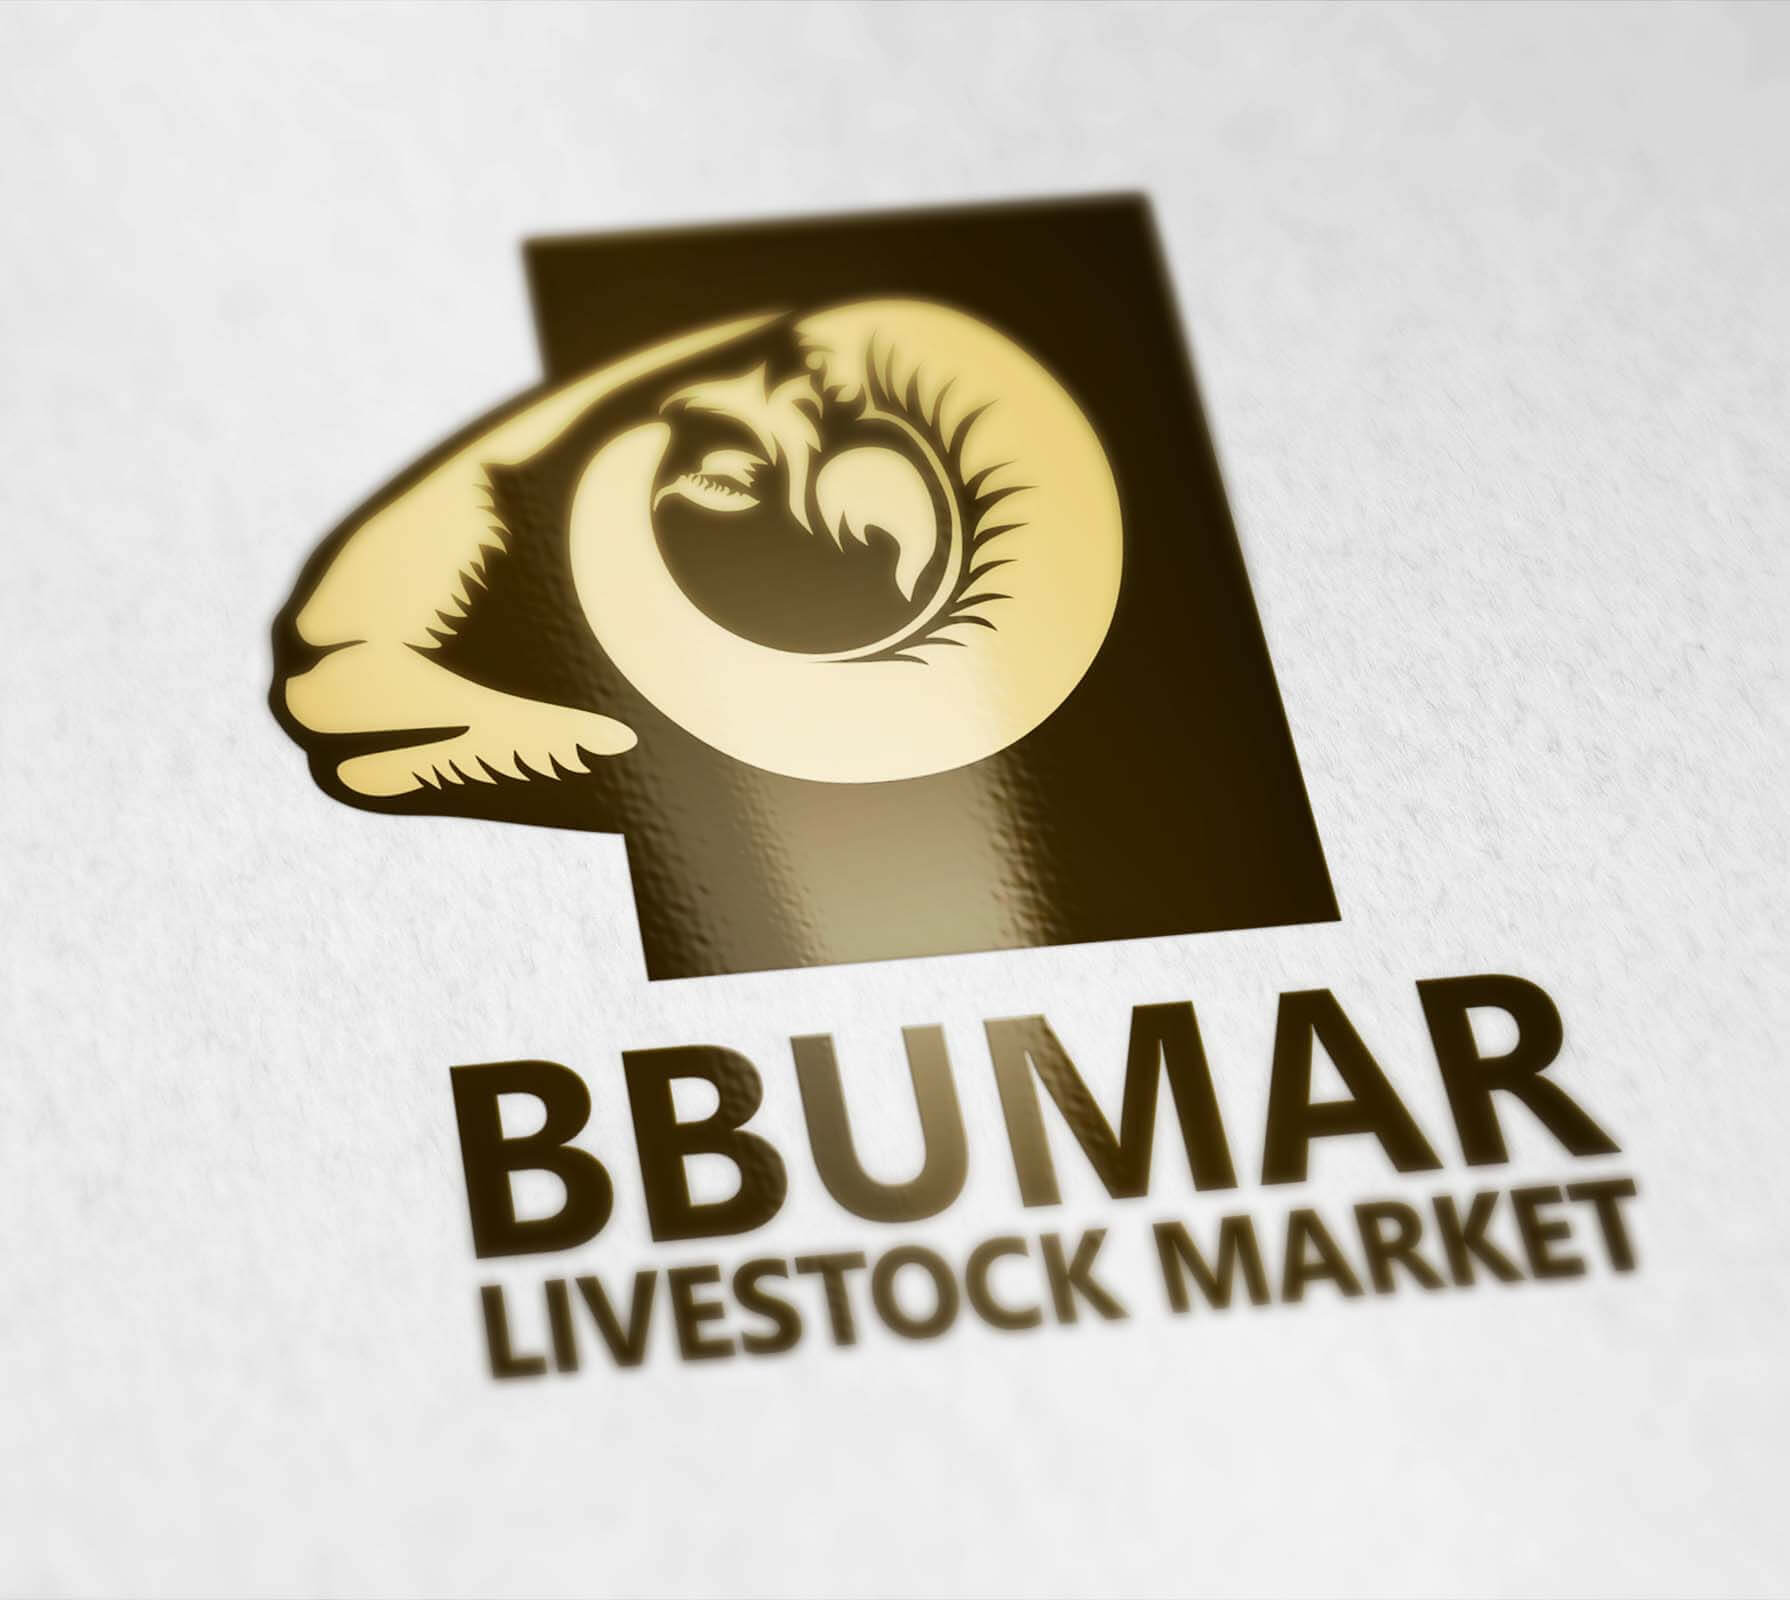 BBUMAR - Logo Design For A Livestock Market